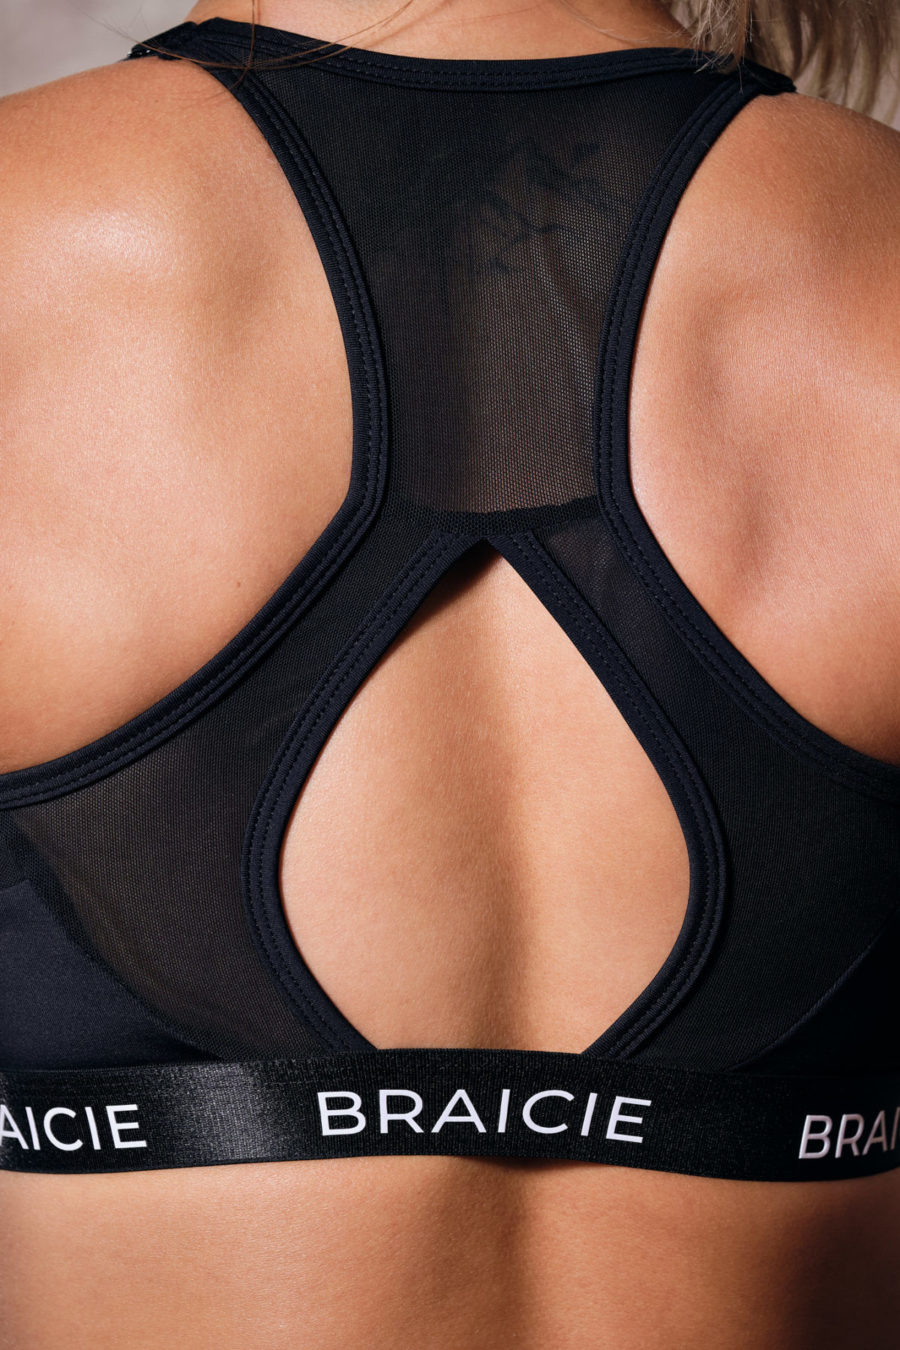 Detaillierte Rückenansicht einer Frau im BRAICIE Elegance Sport-BH in schwarz